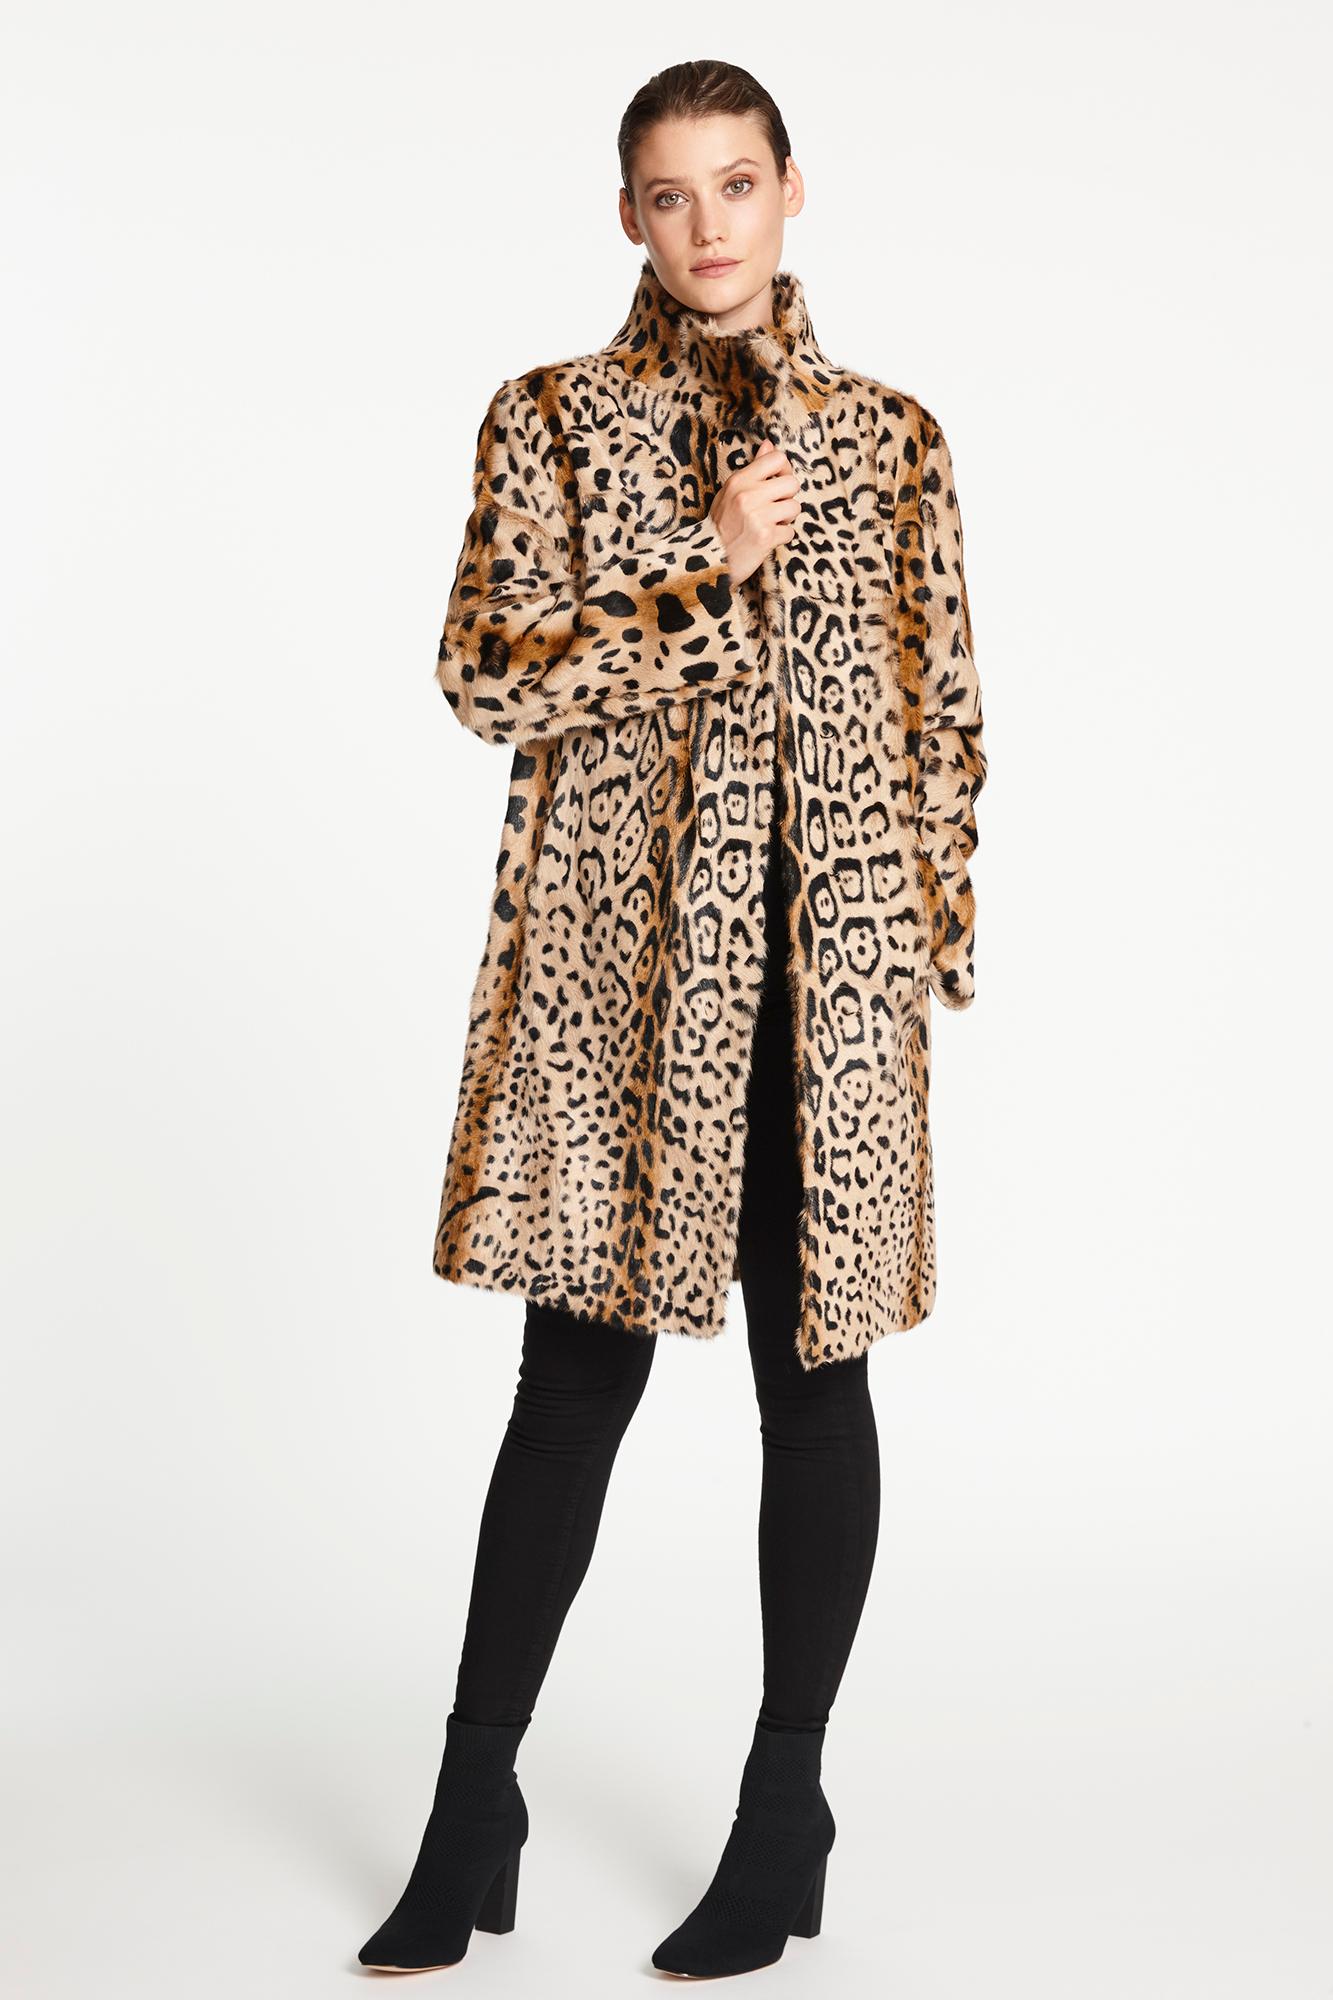 Verheyen Lon High Collar Leopard Print Coat in Goat Hair Fur Size 12-14 2